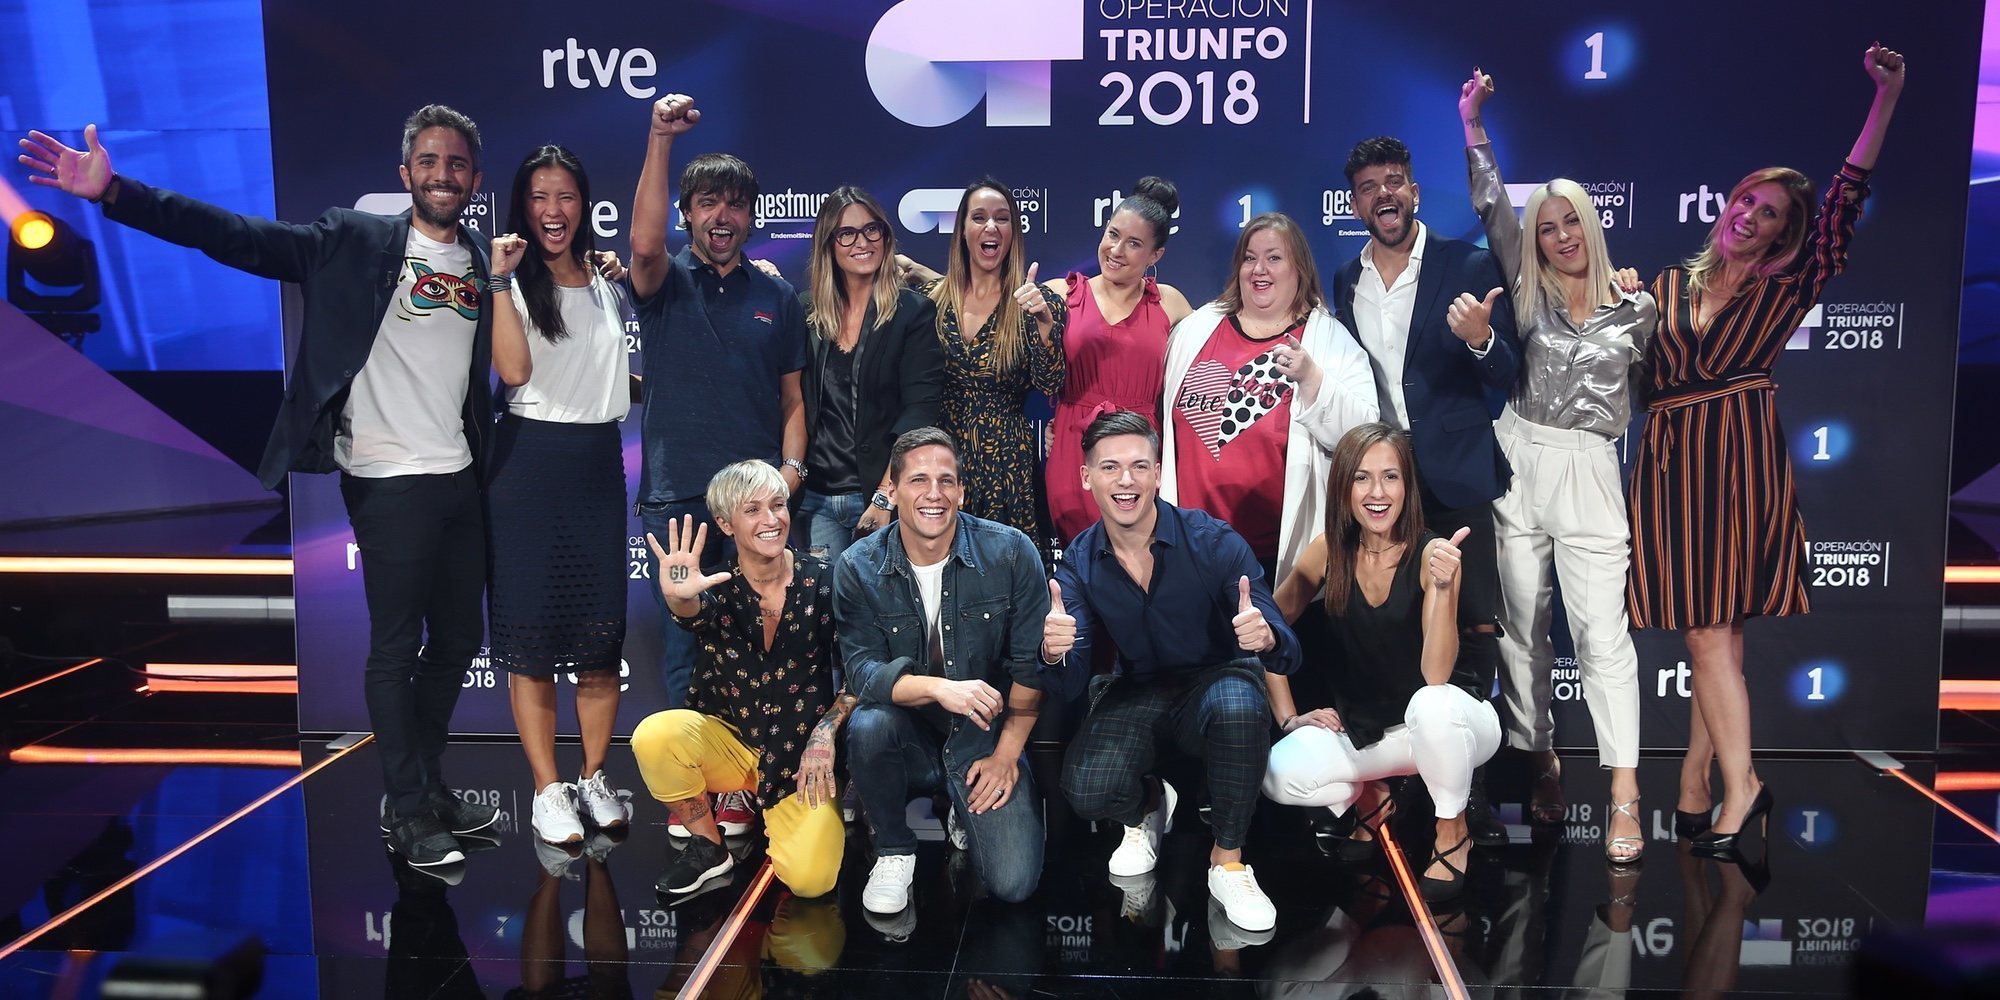 Todo lo que debes saber sobre 'OT 2018': Ricky Merino en el chat y el representante de Eurovisión